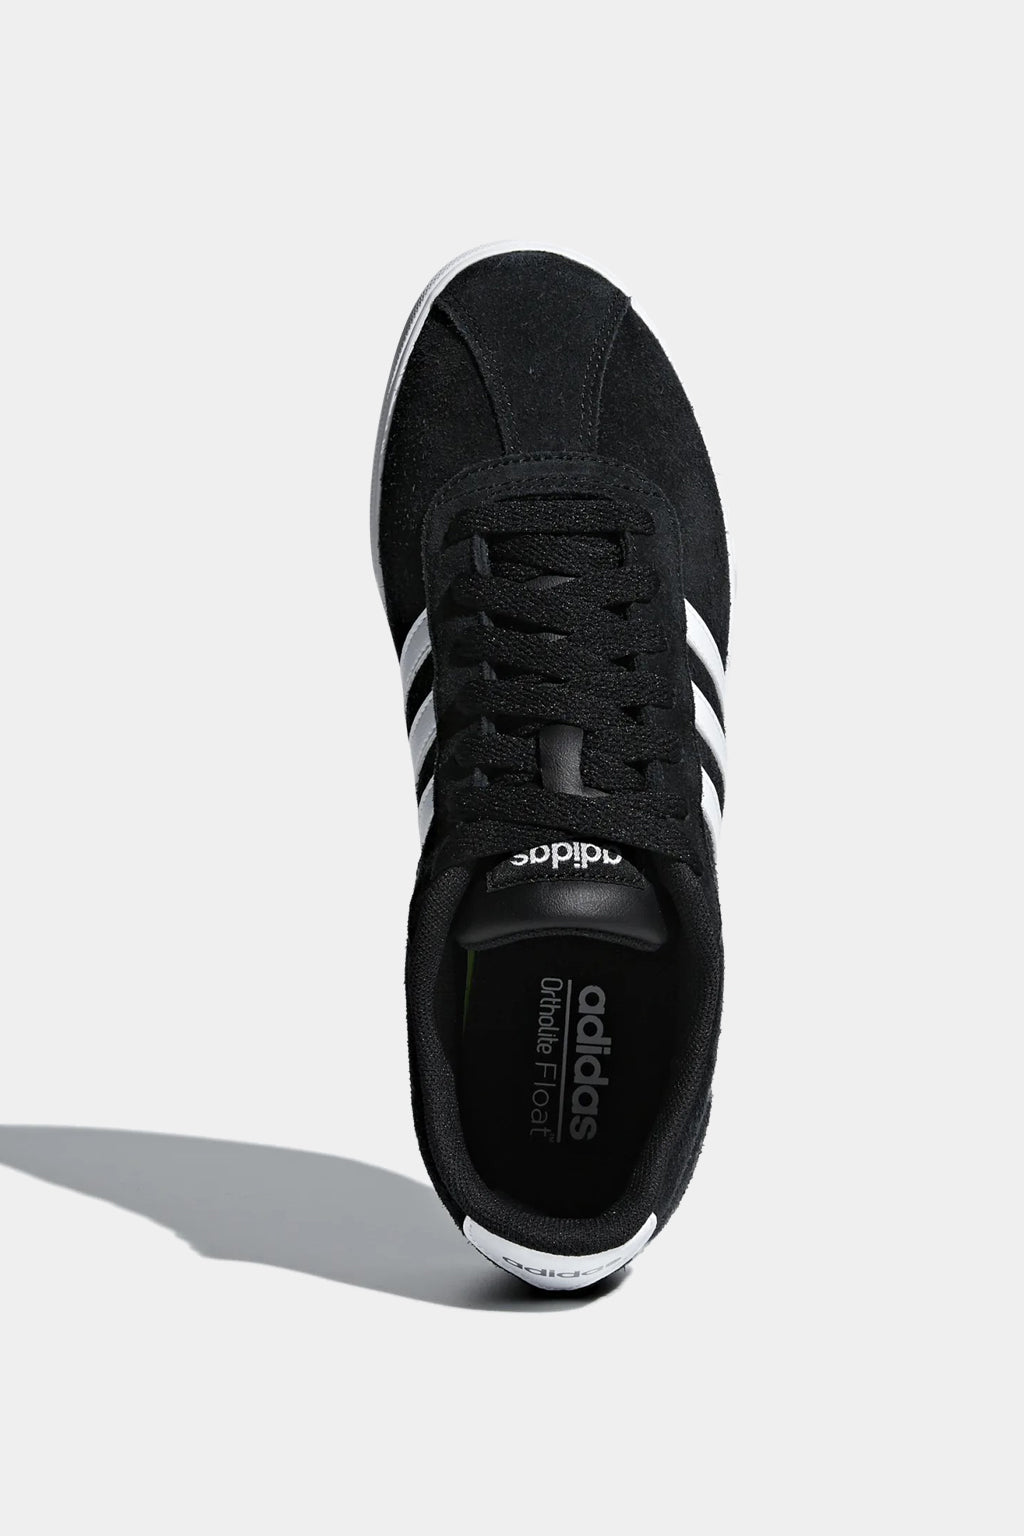 Adidas - Courtset Shoes